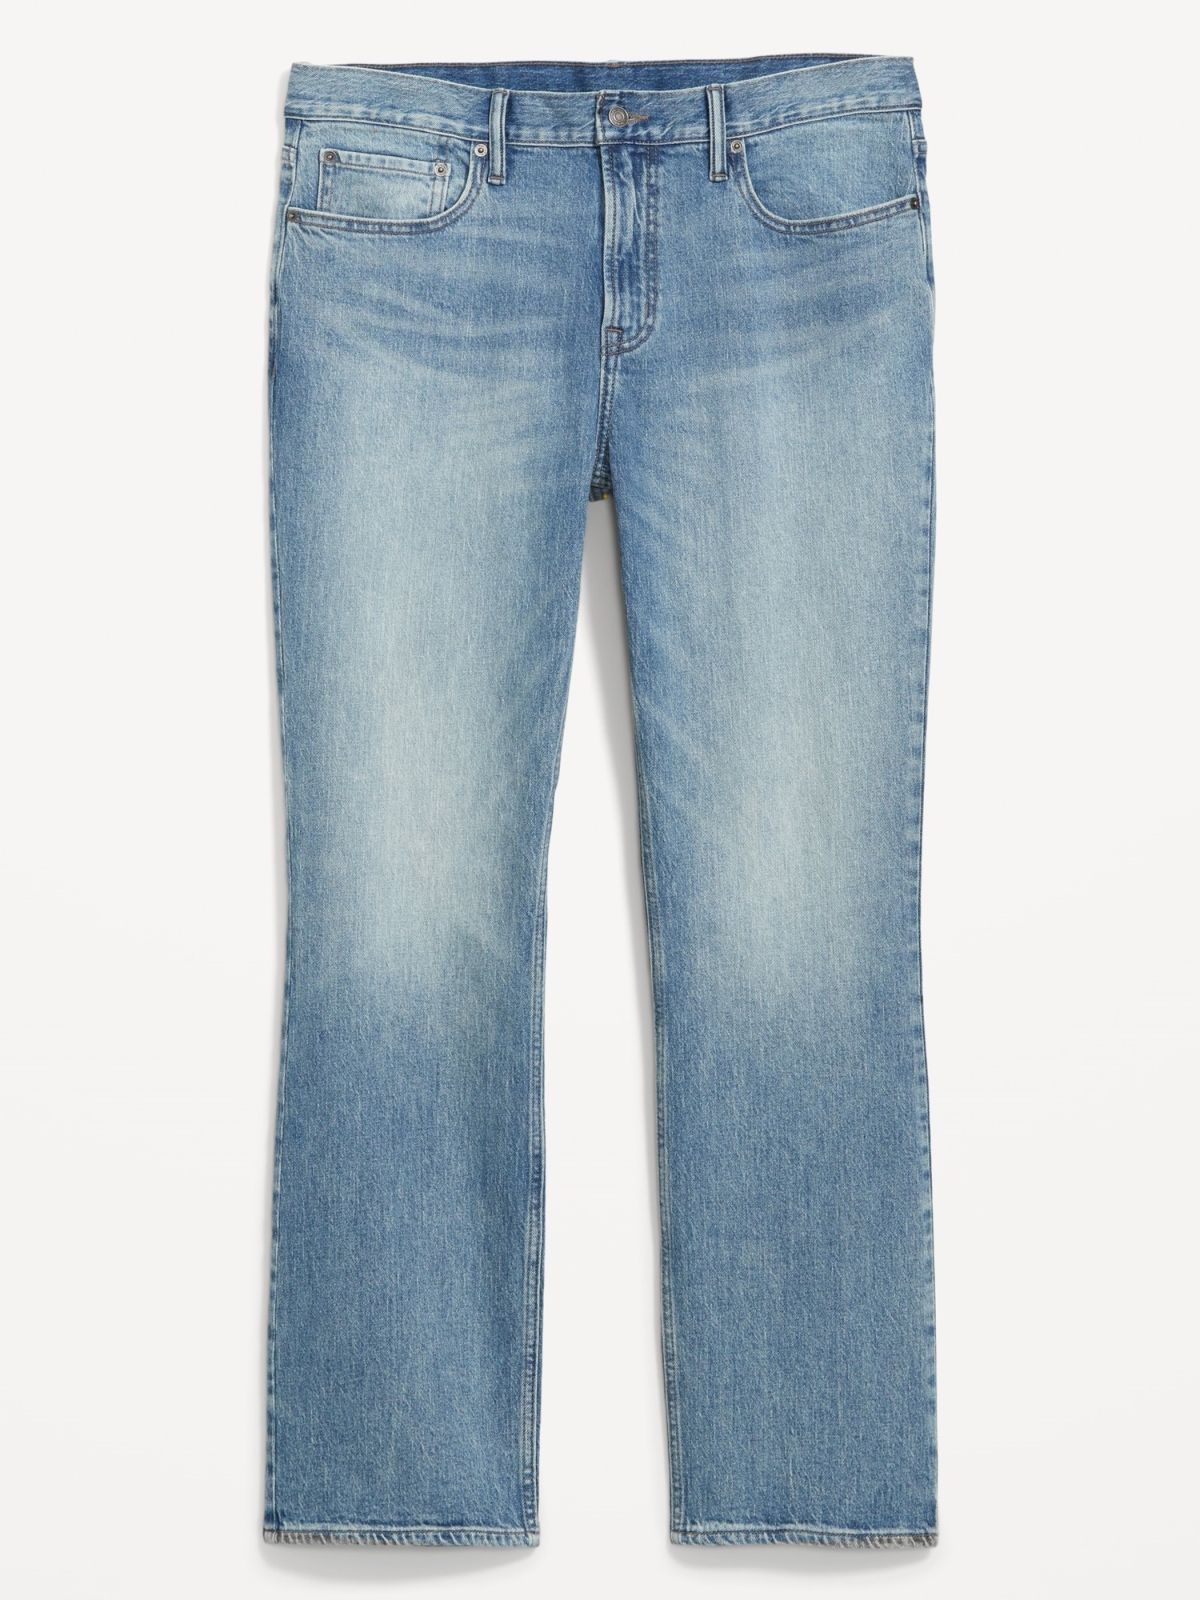  ג'ינס ארוך בגזרה ישרה של OLD NAVY